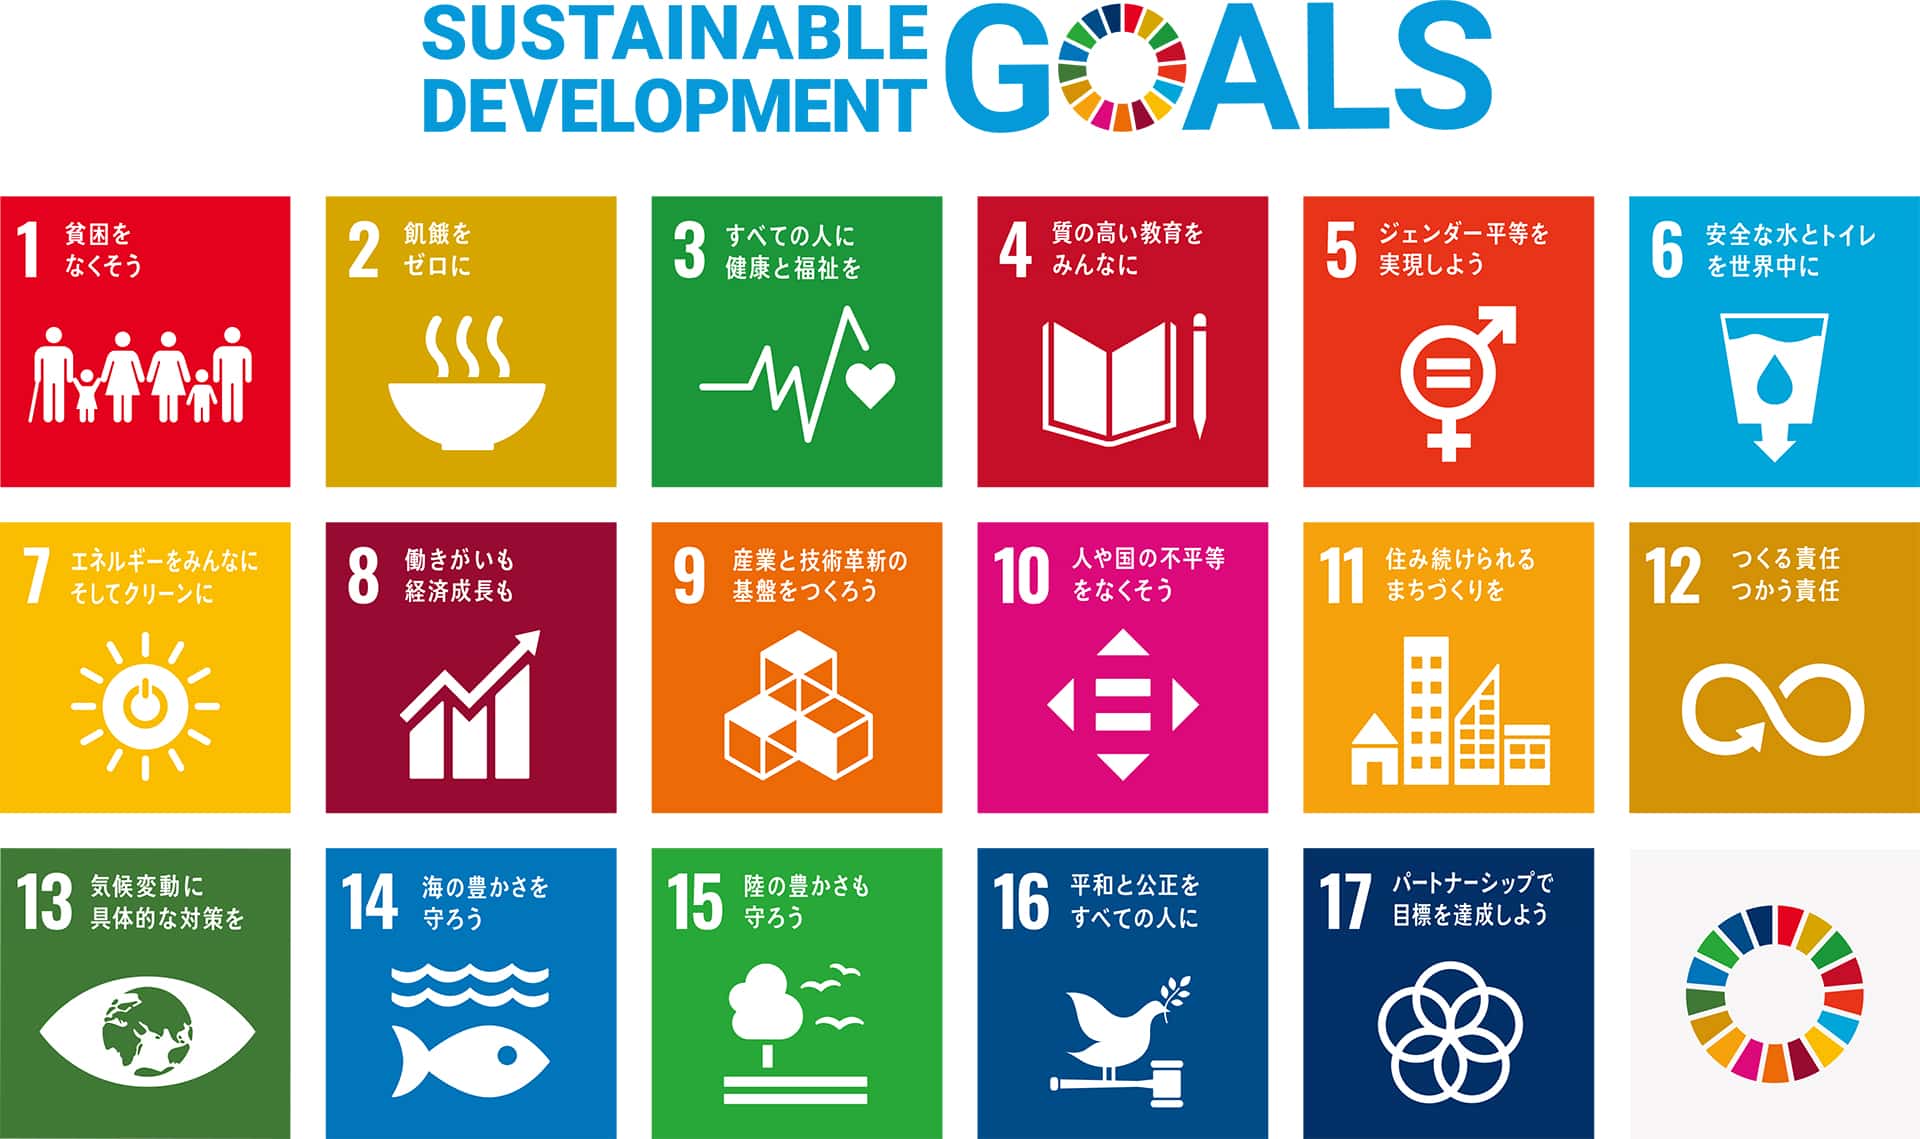 Sustainable Development Goals=「持続可能な開発目標」